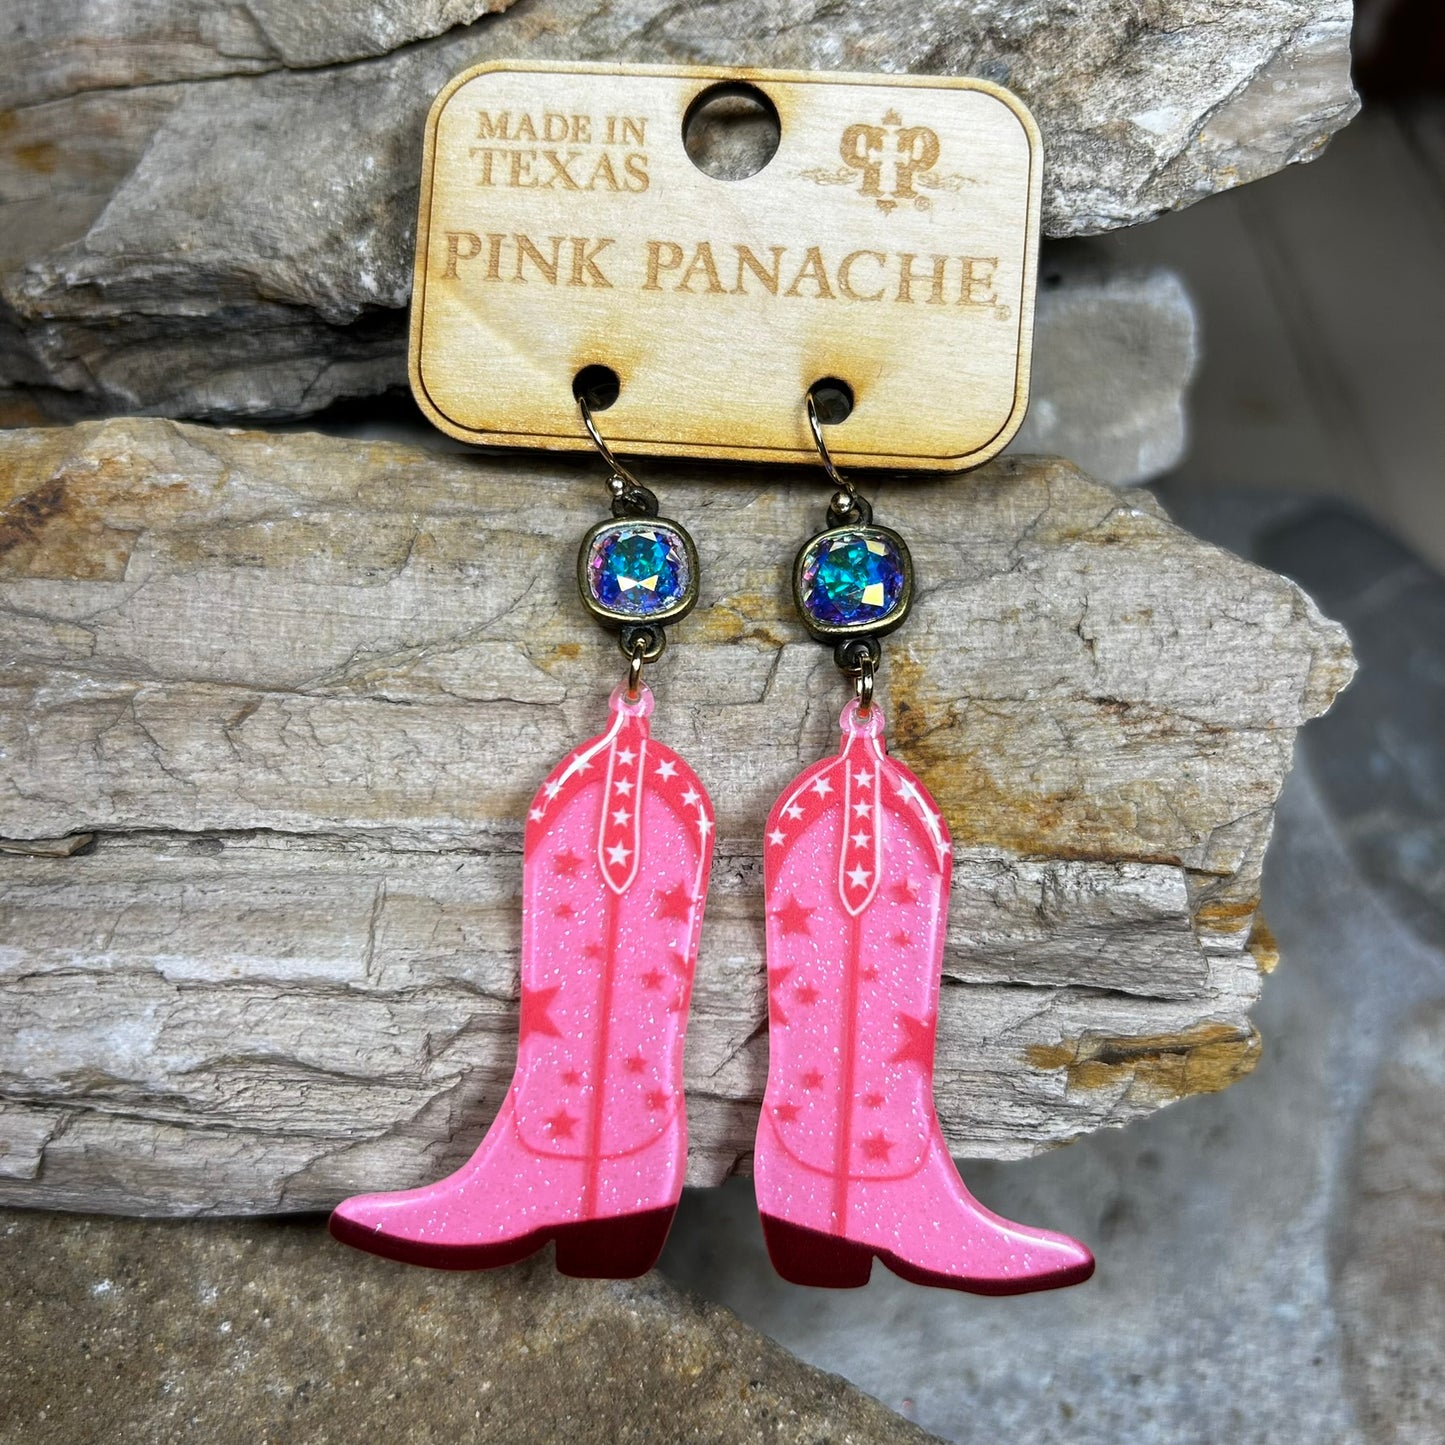 Pink Cowboy Boot Earrings